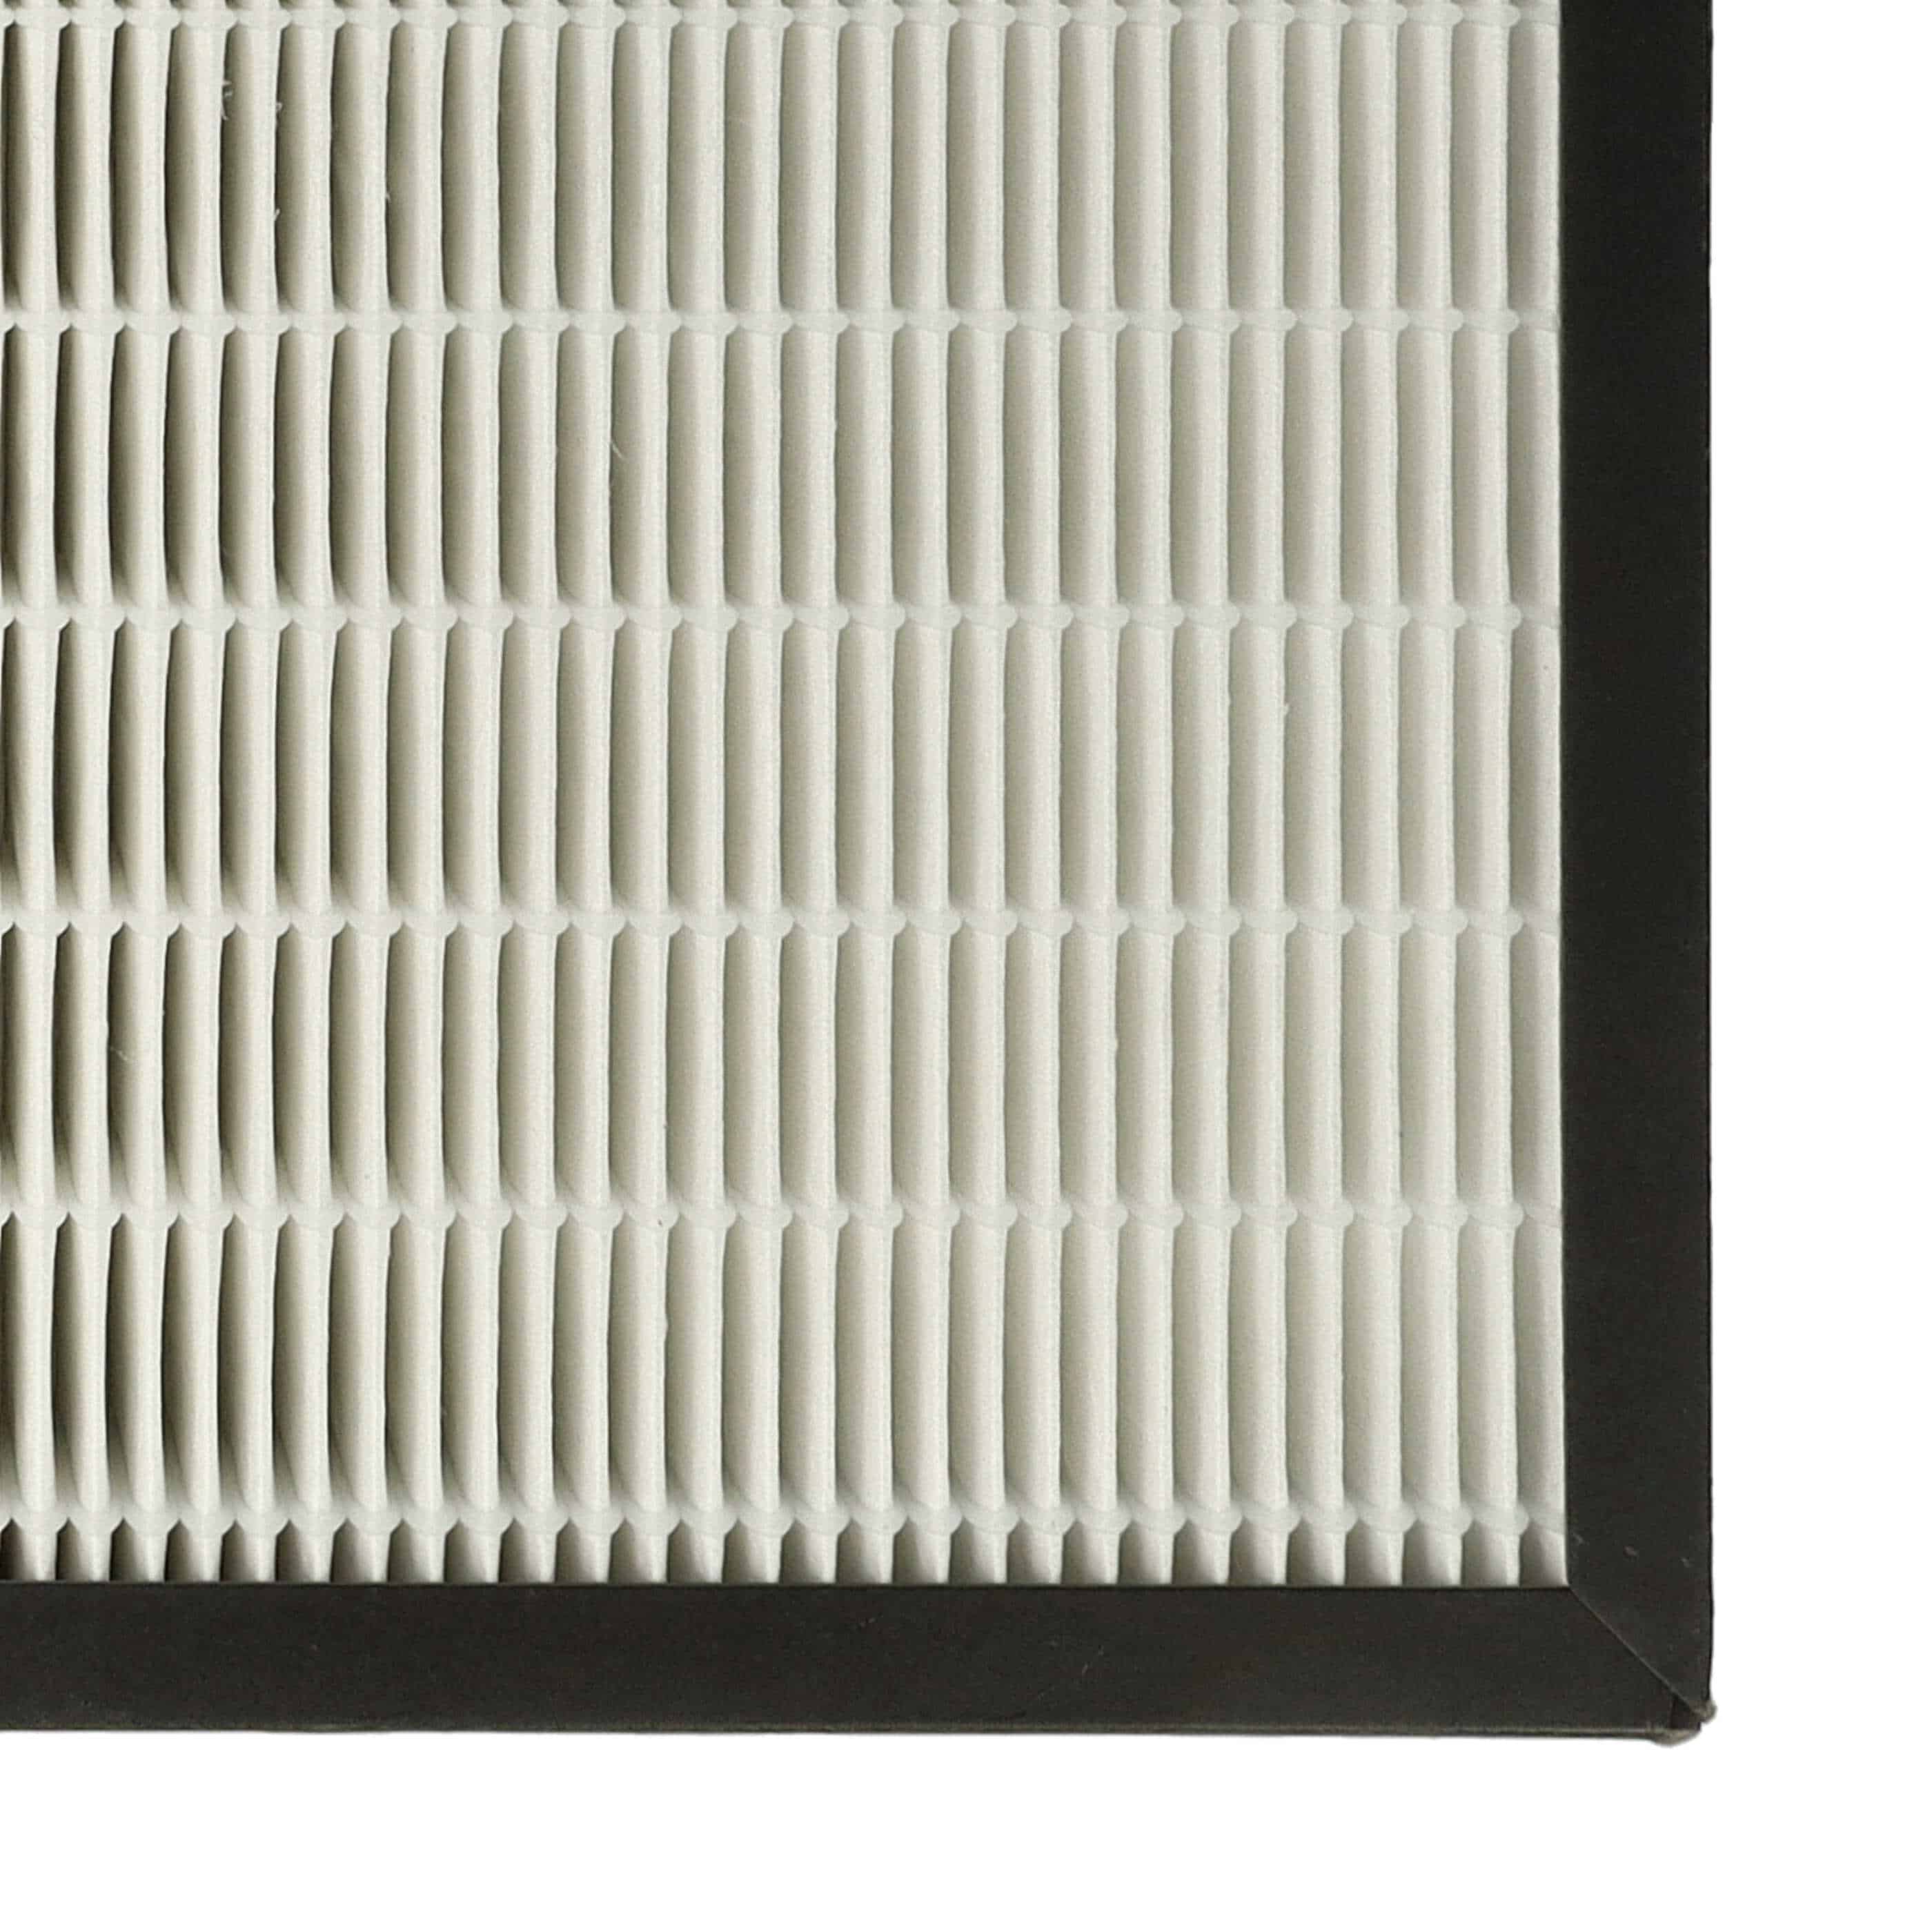 Filtr do oczyszczacza powietrza zam. Philips AC4158/00 - HEPA + węgiel aktywny